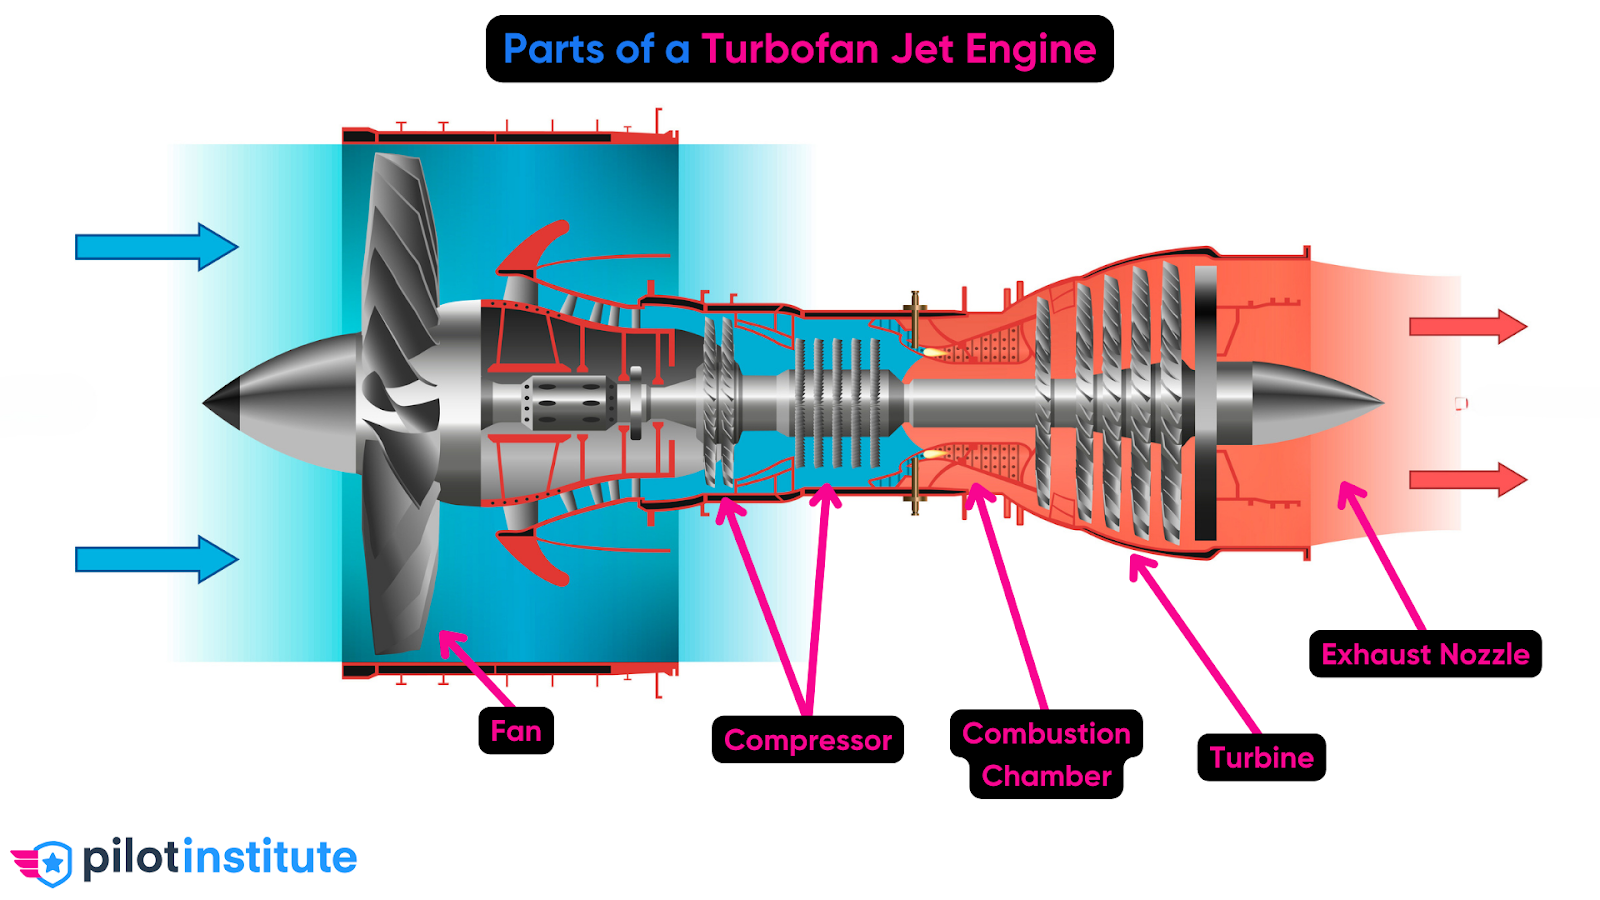 turbofan engine 